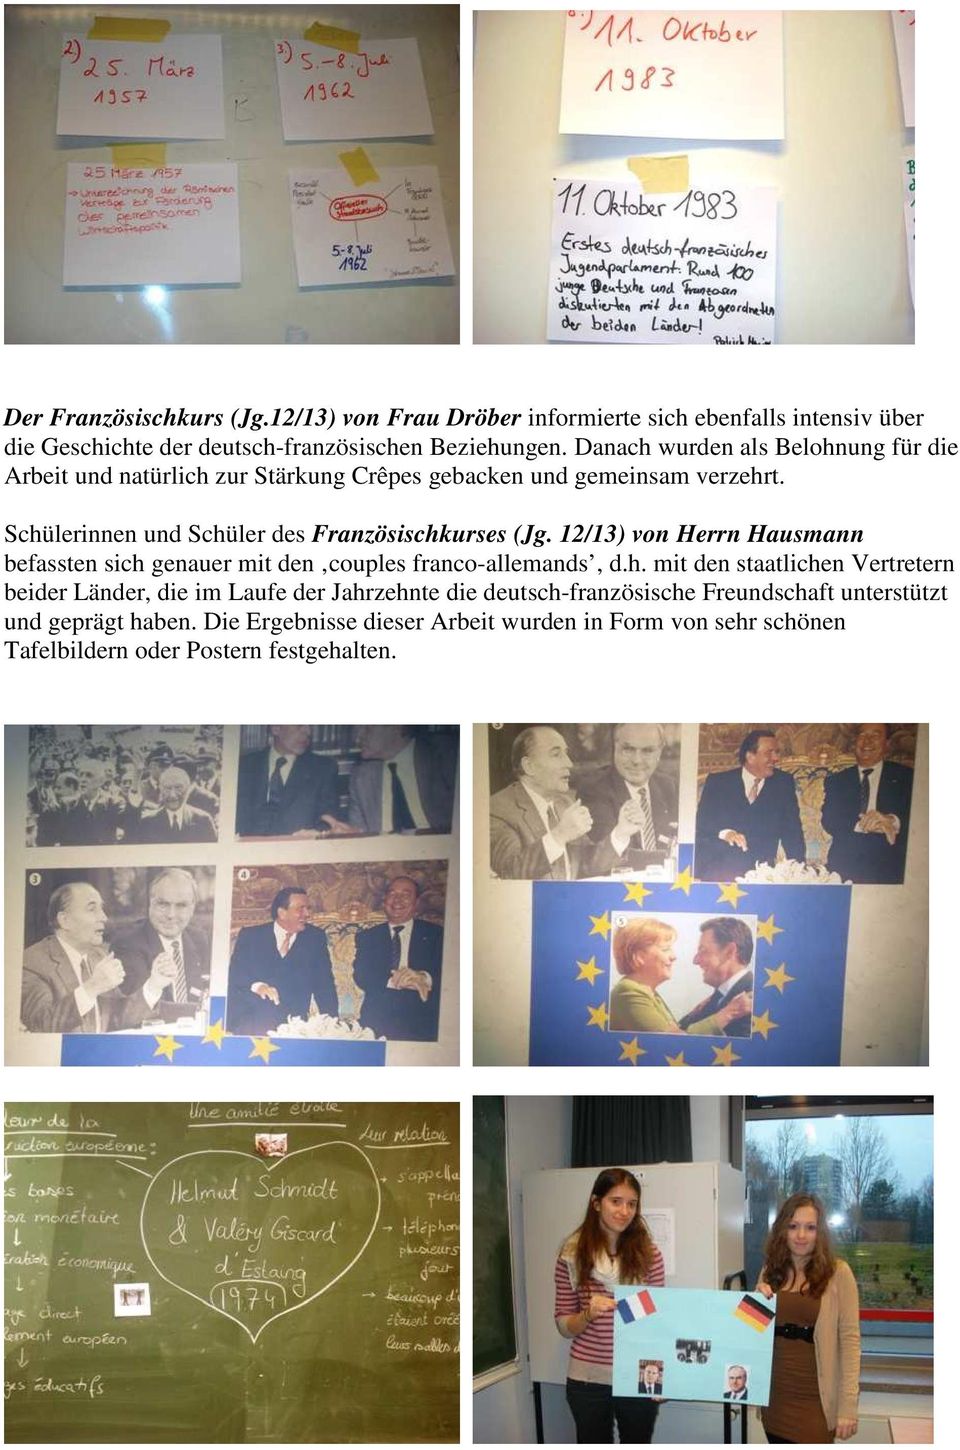 Schülerinnen und Schüler des Französischkurses (Jg. 12/13) von Herrn Hausmann befassten sich genauer mit den couples franco-allemands, d.h. mit den staatlichen Vertretern beider Länder, die im Laufe der Jahrzehnte die deutsch-französische Freundschaft unterstützt und geprägt haben.